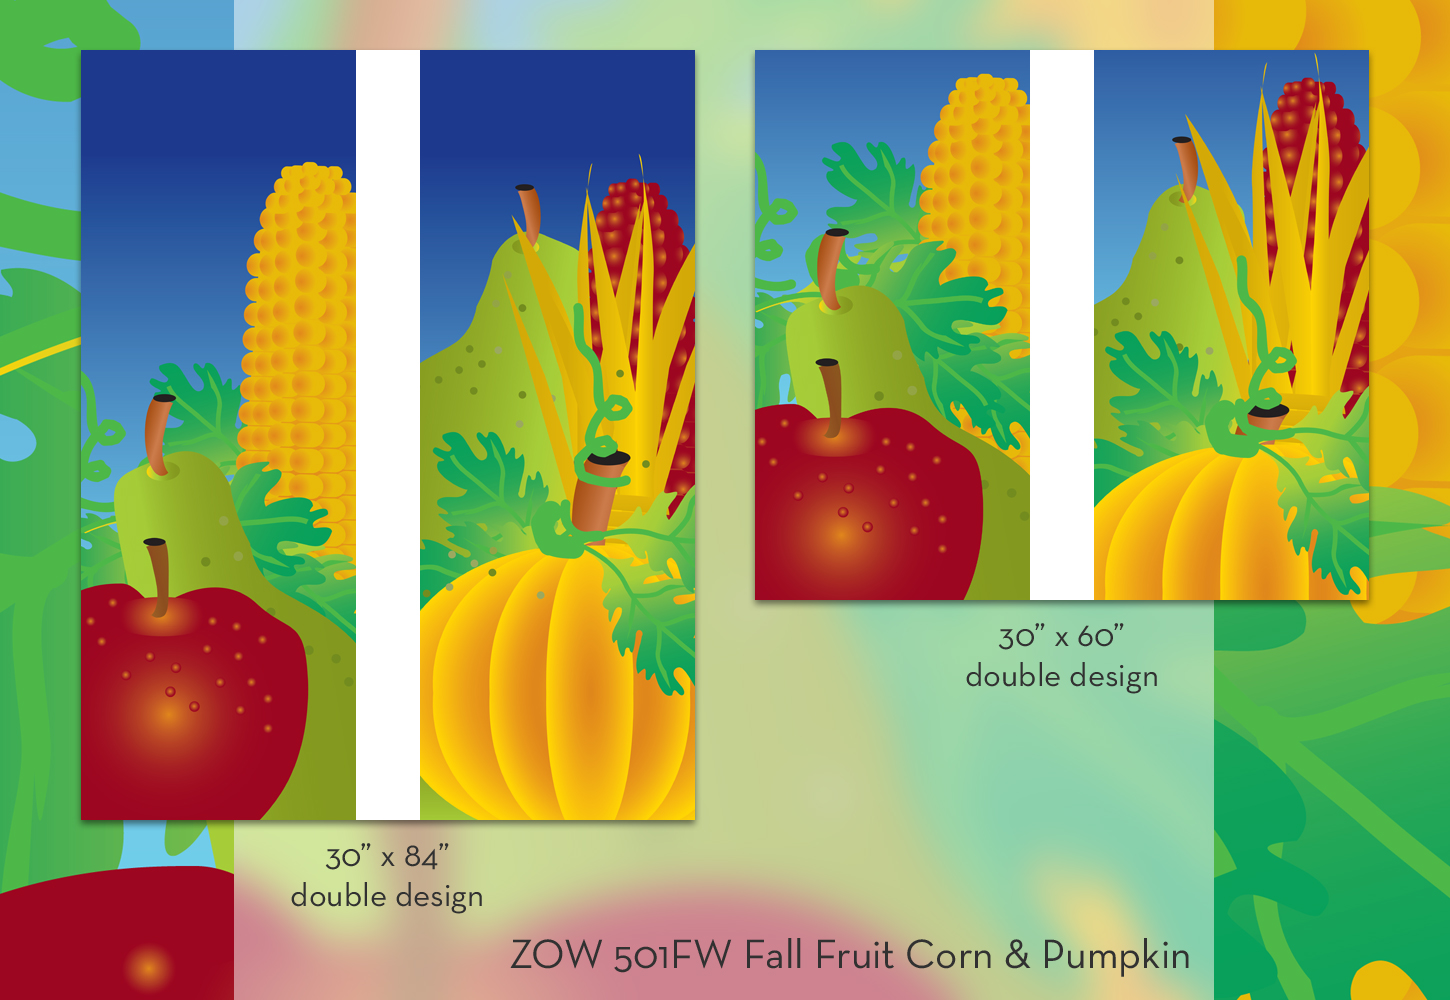 ZOW 501FW Fall Fruit Corn & Pumpkin